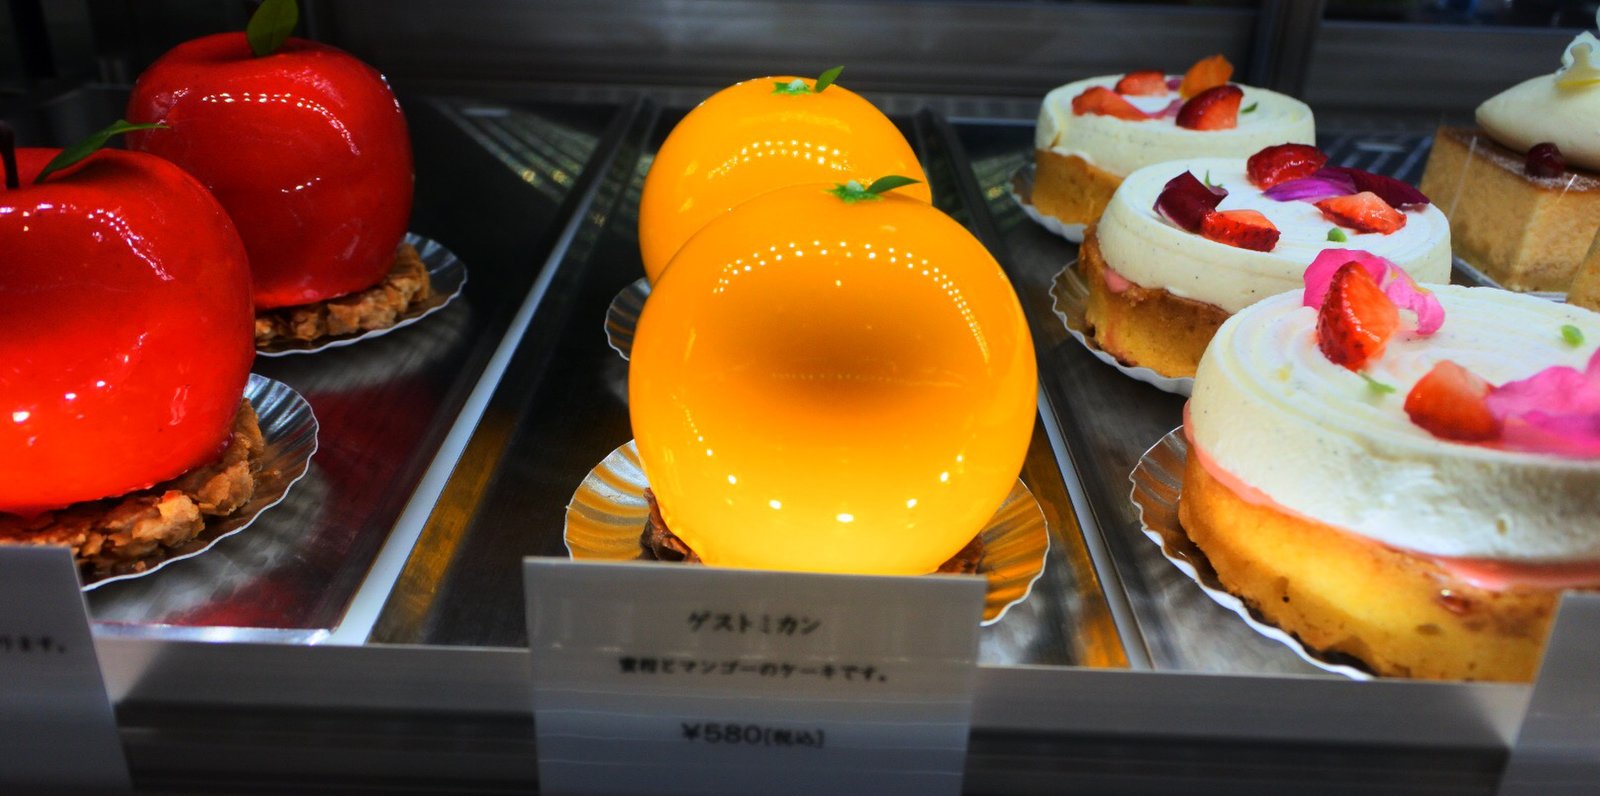 京橋 カフェ 新鮮すぎるスイーツ店 オーダーしてから作られる生しぼりモンブランと芸術的なケーキ Playlife プレイライフ